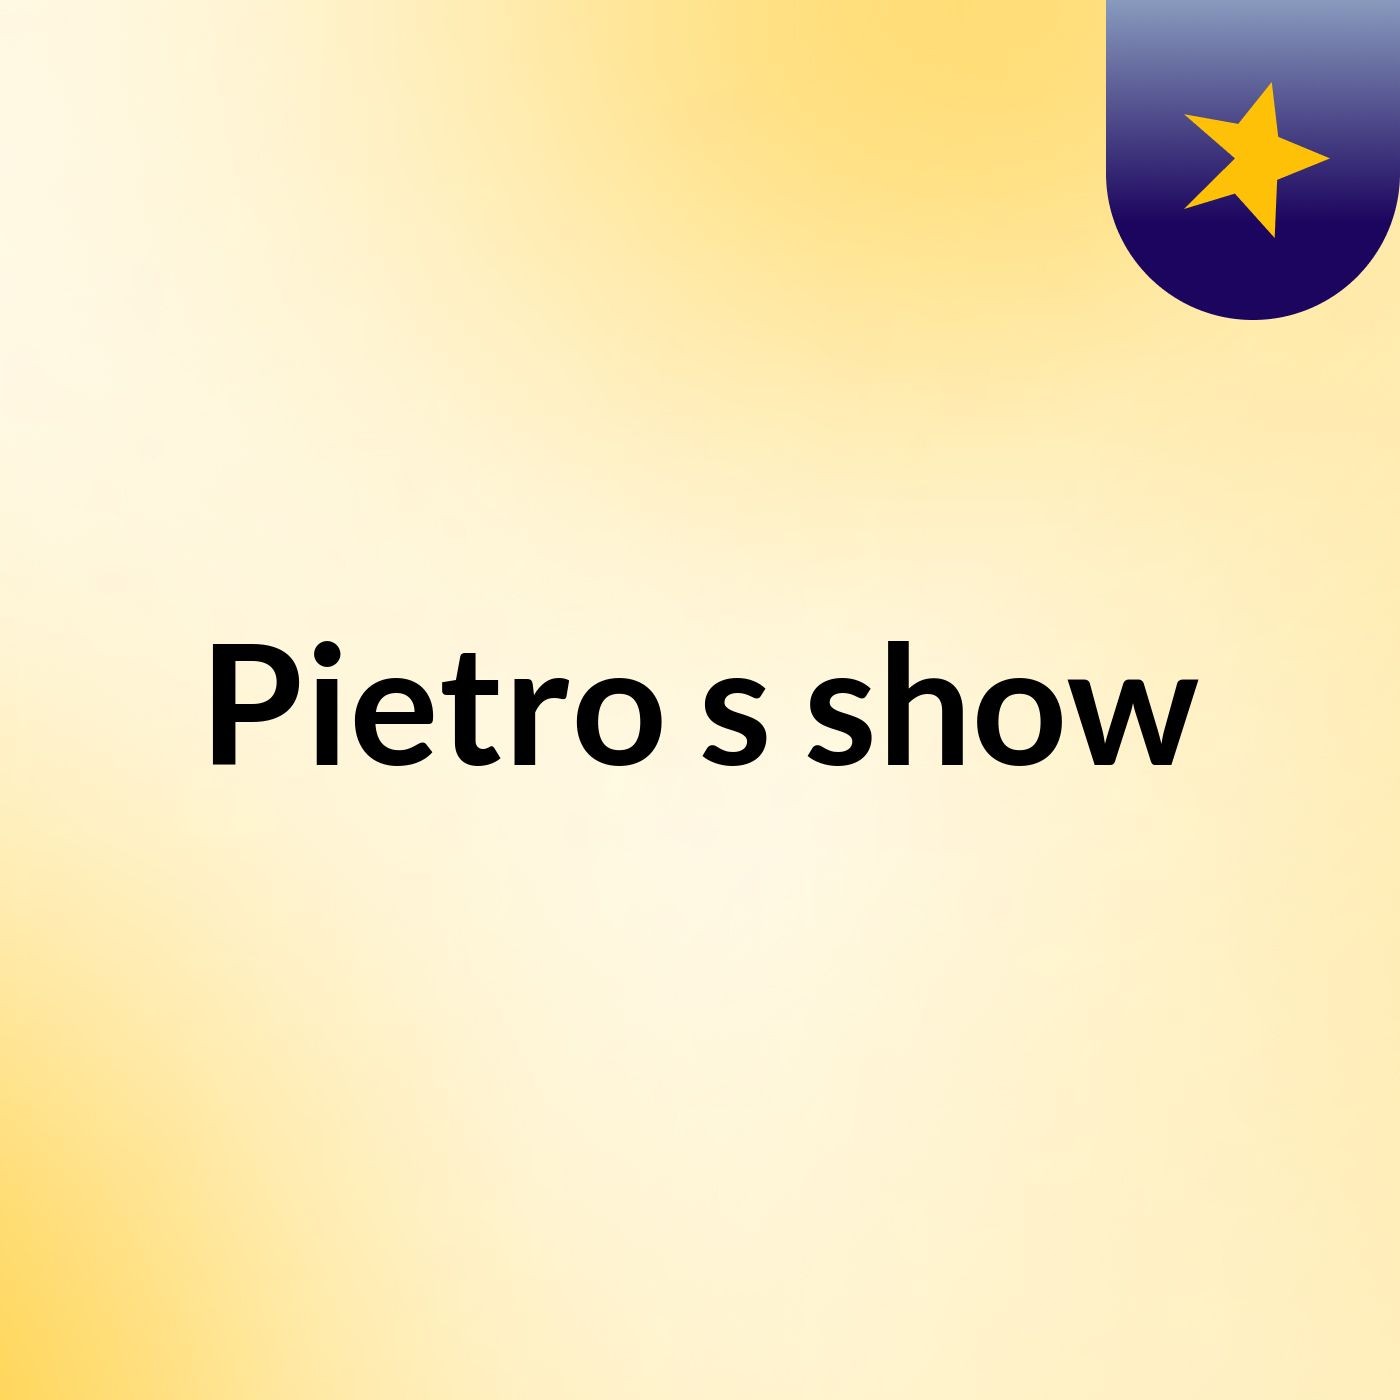 Pietro's show